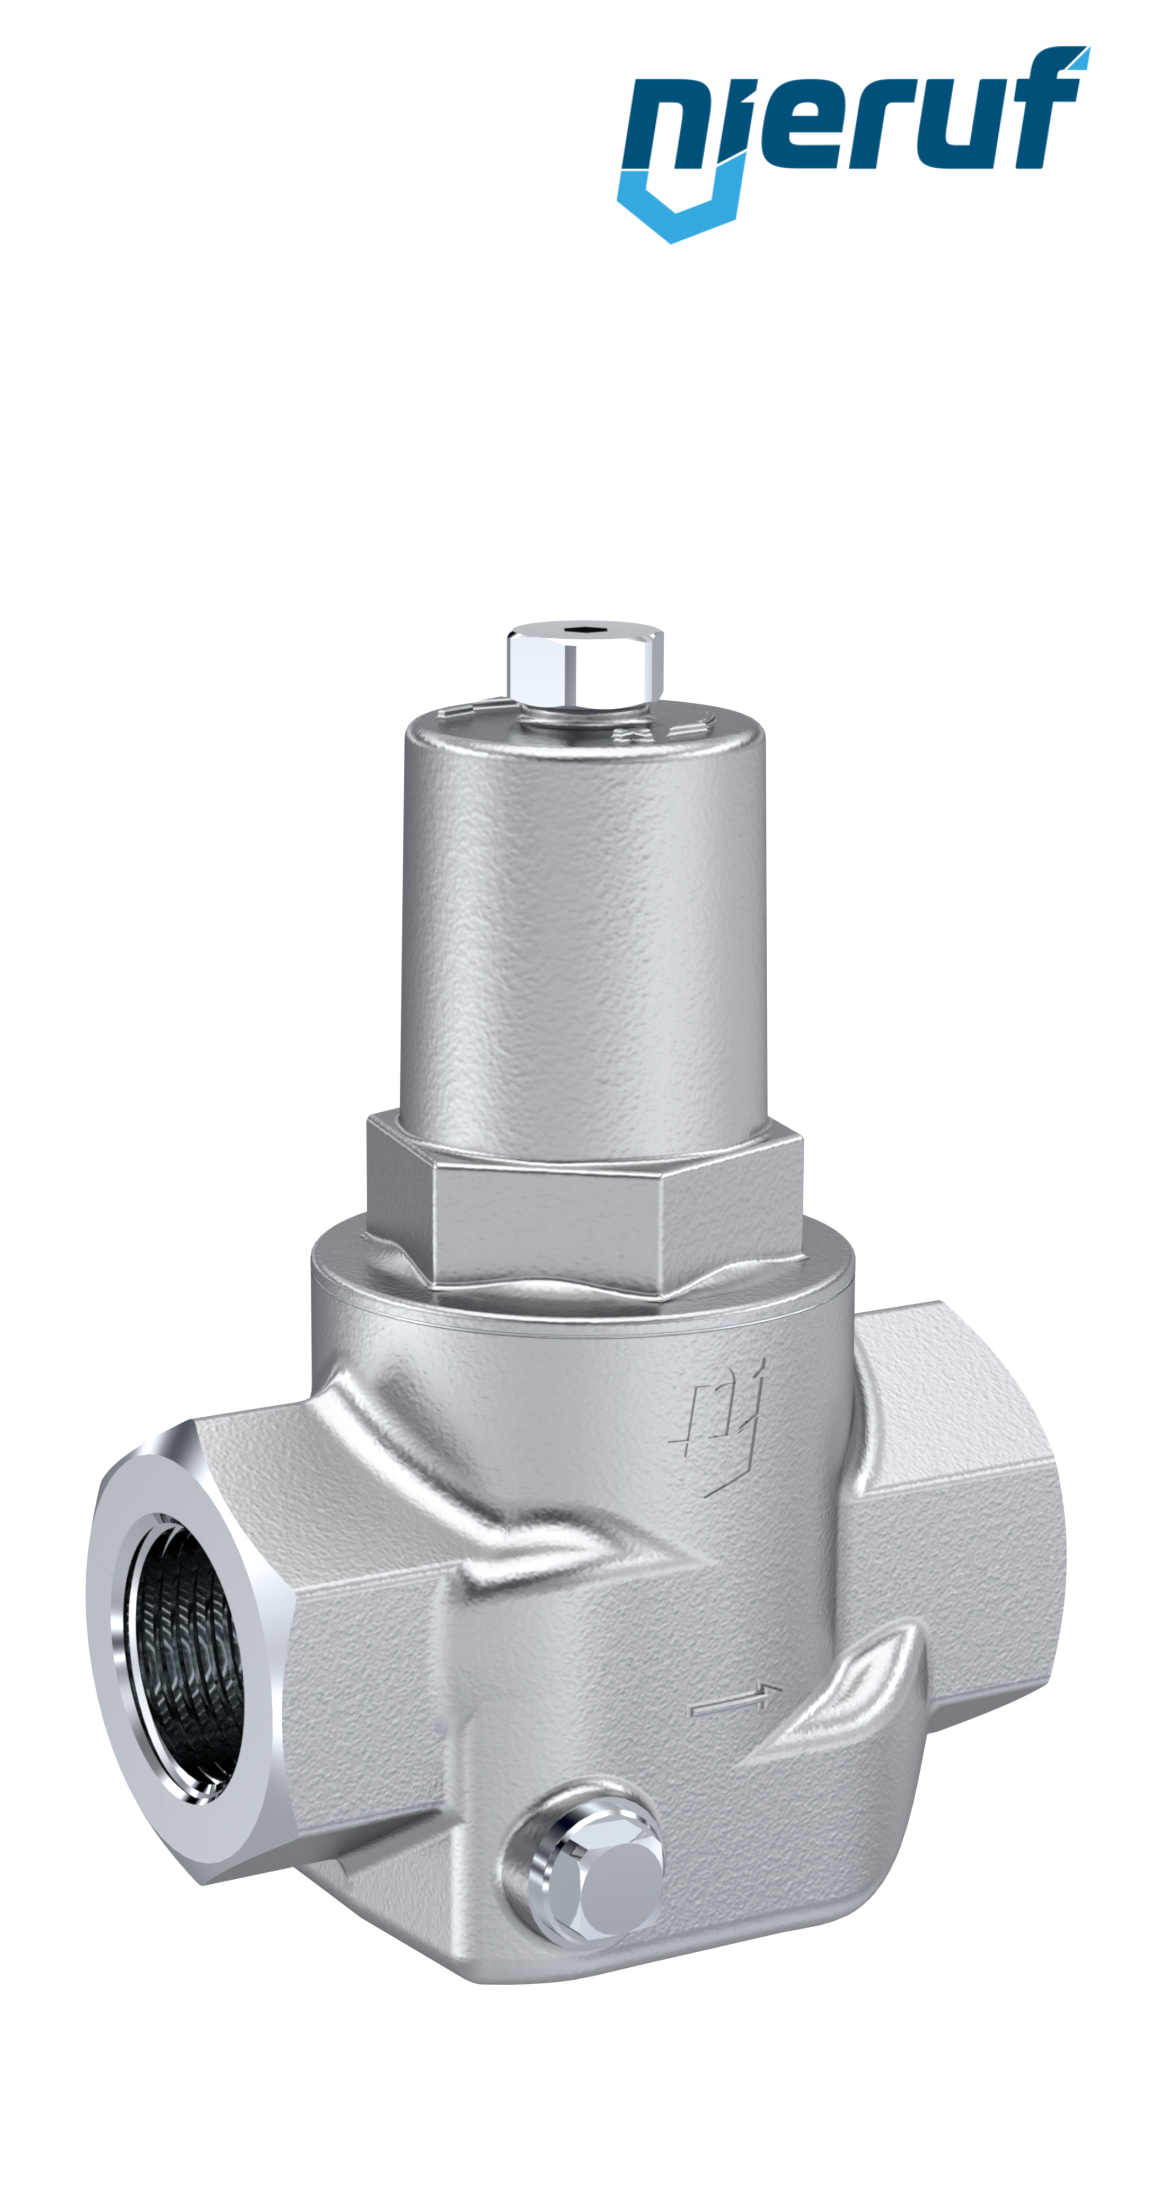 réducteur de pression d'eau (40 bar) G 1/4, 0,5 à 6 bar (DRW1140-6) -  Landefeld - pneumatique - hydraulique - équipements industriels